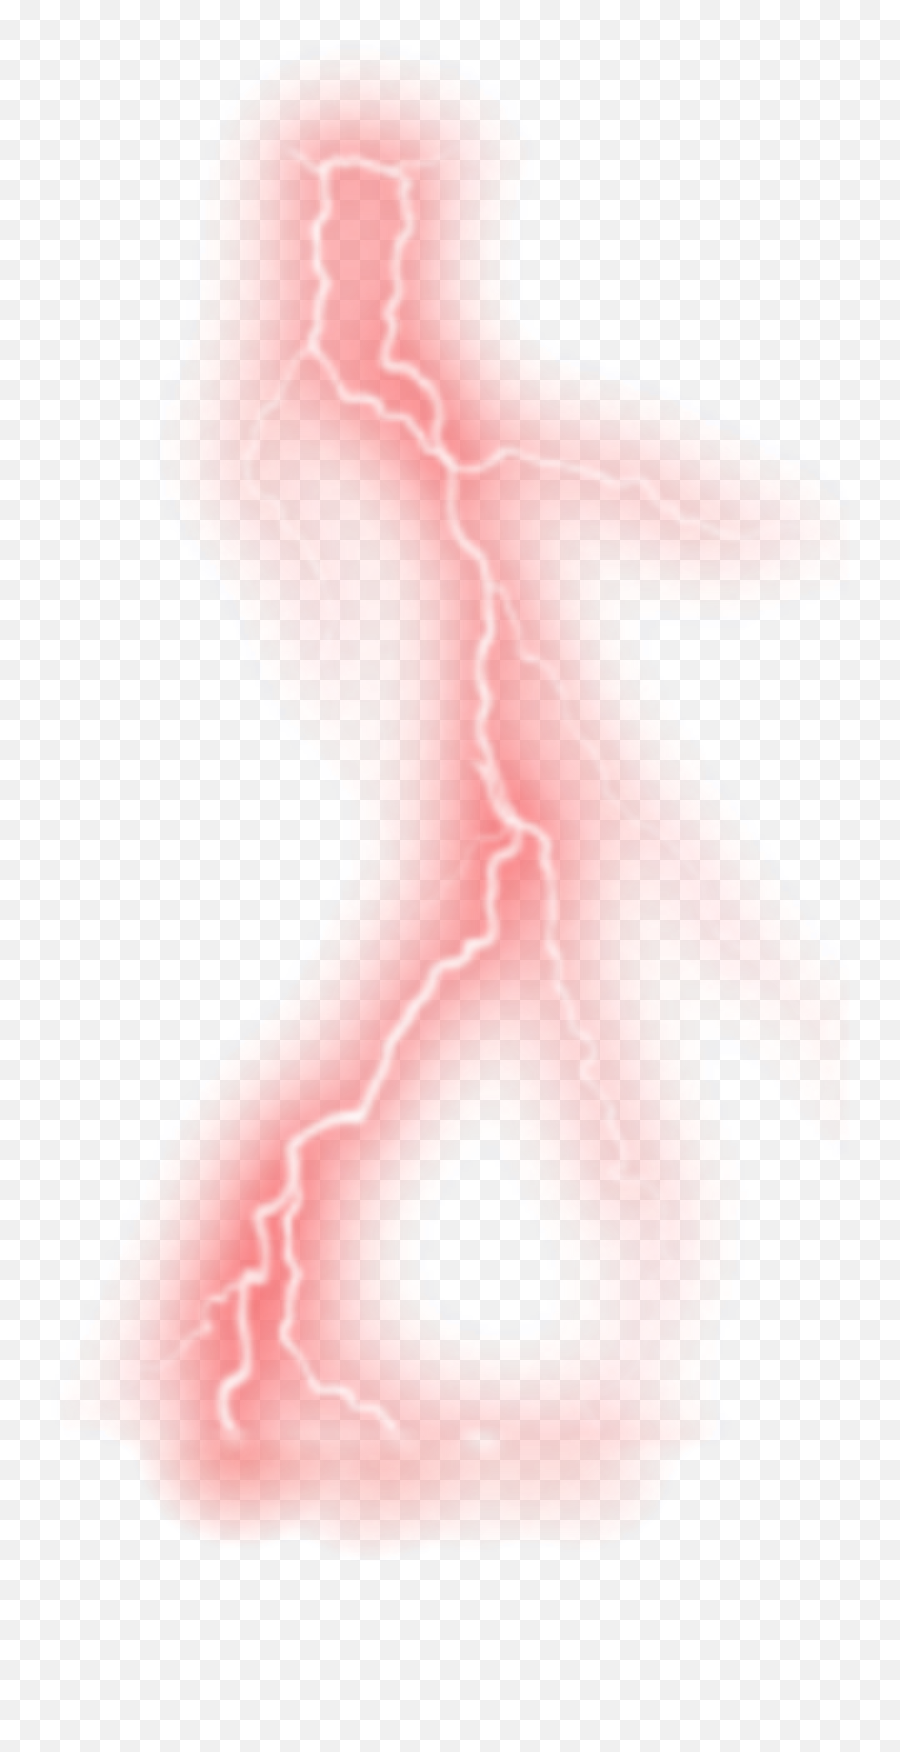 Red Lightning Illustration Png Red Lightning Transparent Free Transparent Png Images Pngaaa Com